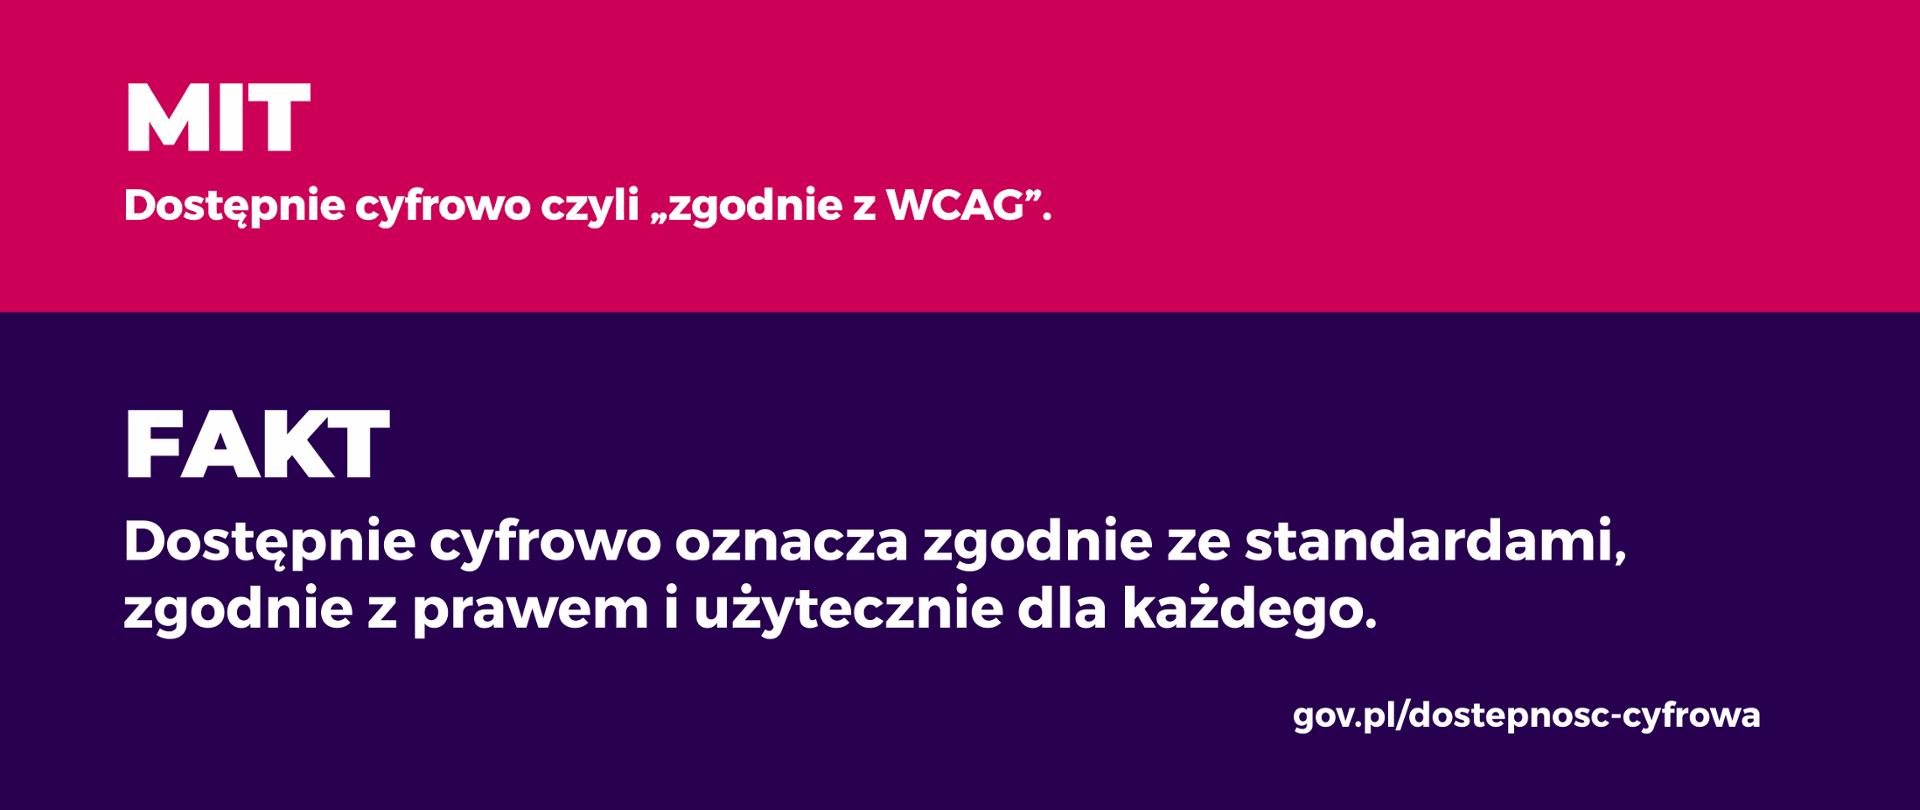 Mit Dostępnie cyfrowo, czyli zgodnie z WCAG. Fakt Dostępnie cyfrowo oznacza zgodnie ze standardami, zgodnie z prawem i użytecznie dla każdego.